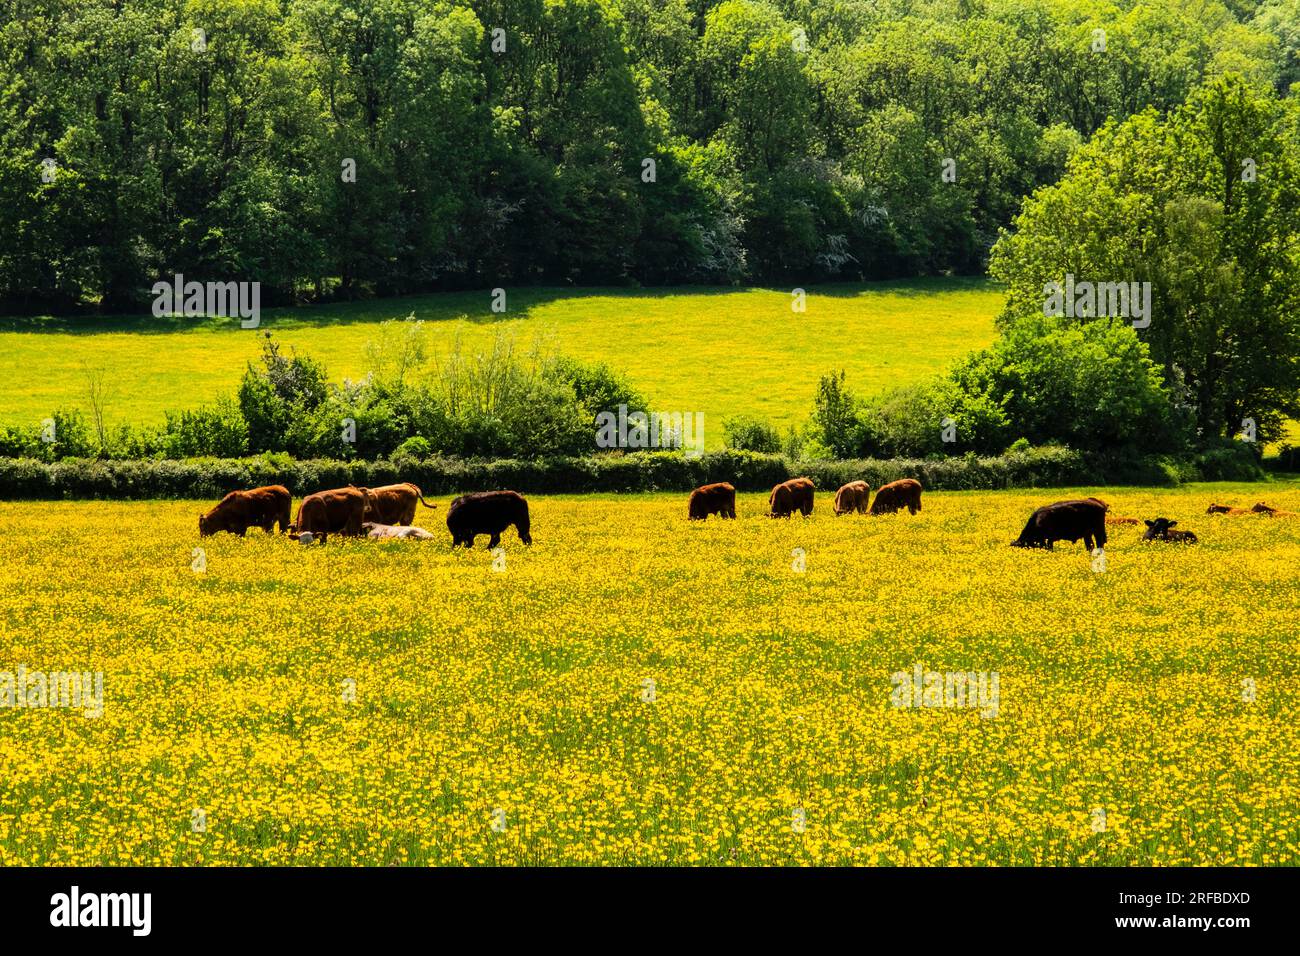 Il bestiame di Hereford pascolava in un campo di fiori di Buttercup gialli nella Golden Valley in estate. Peterchurch, Herefordshire, Inghilterra, Regno Unito, Gran Bretagna Foto Stock